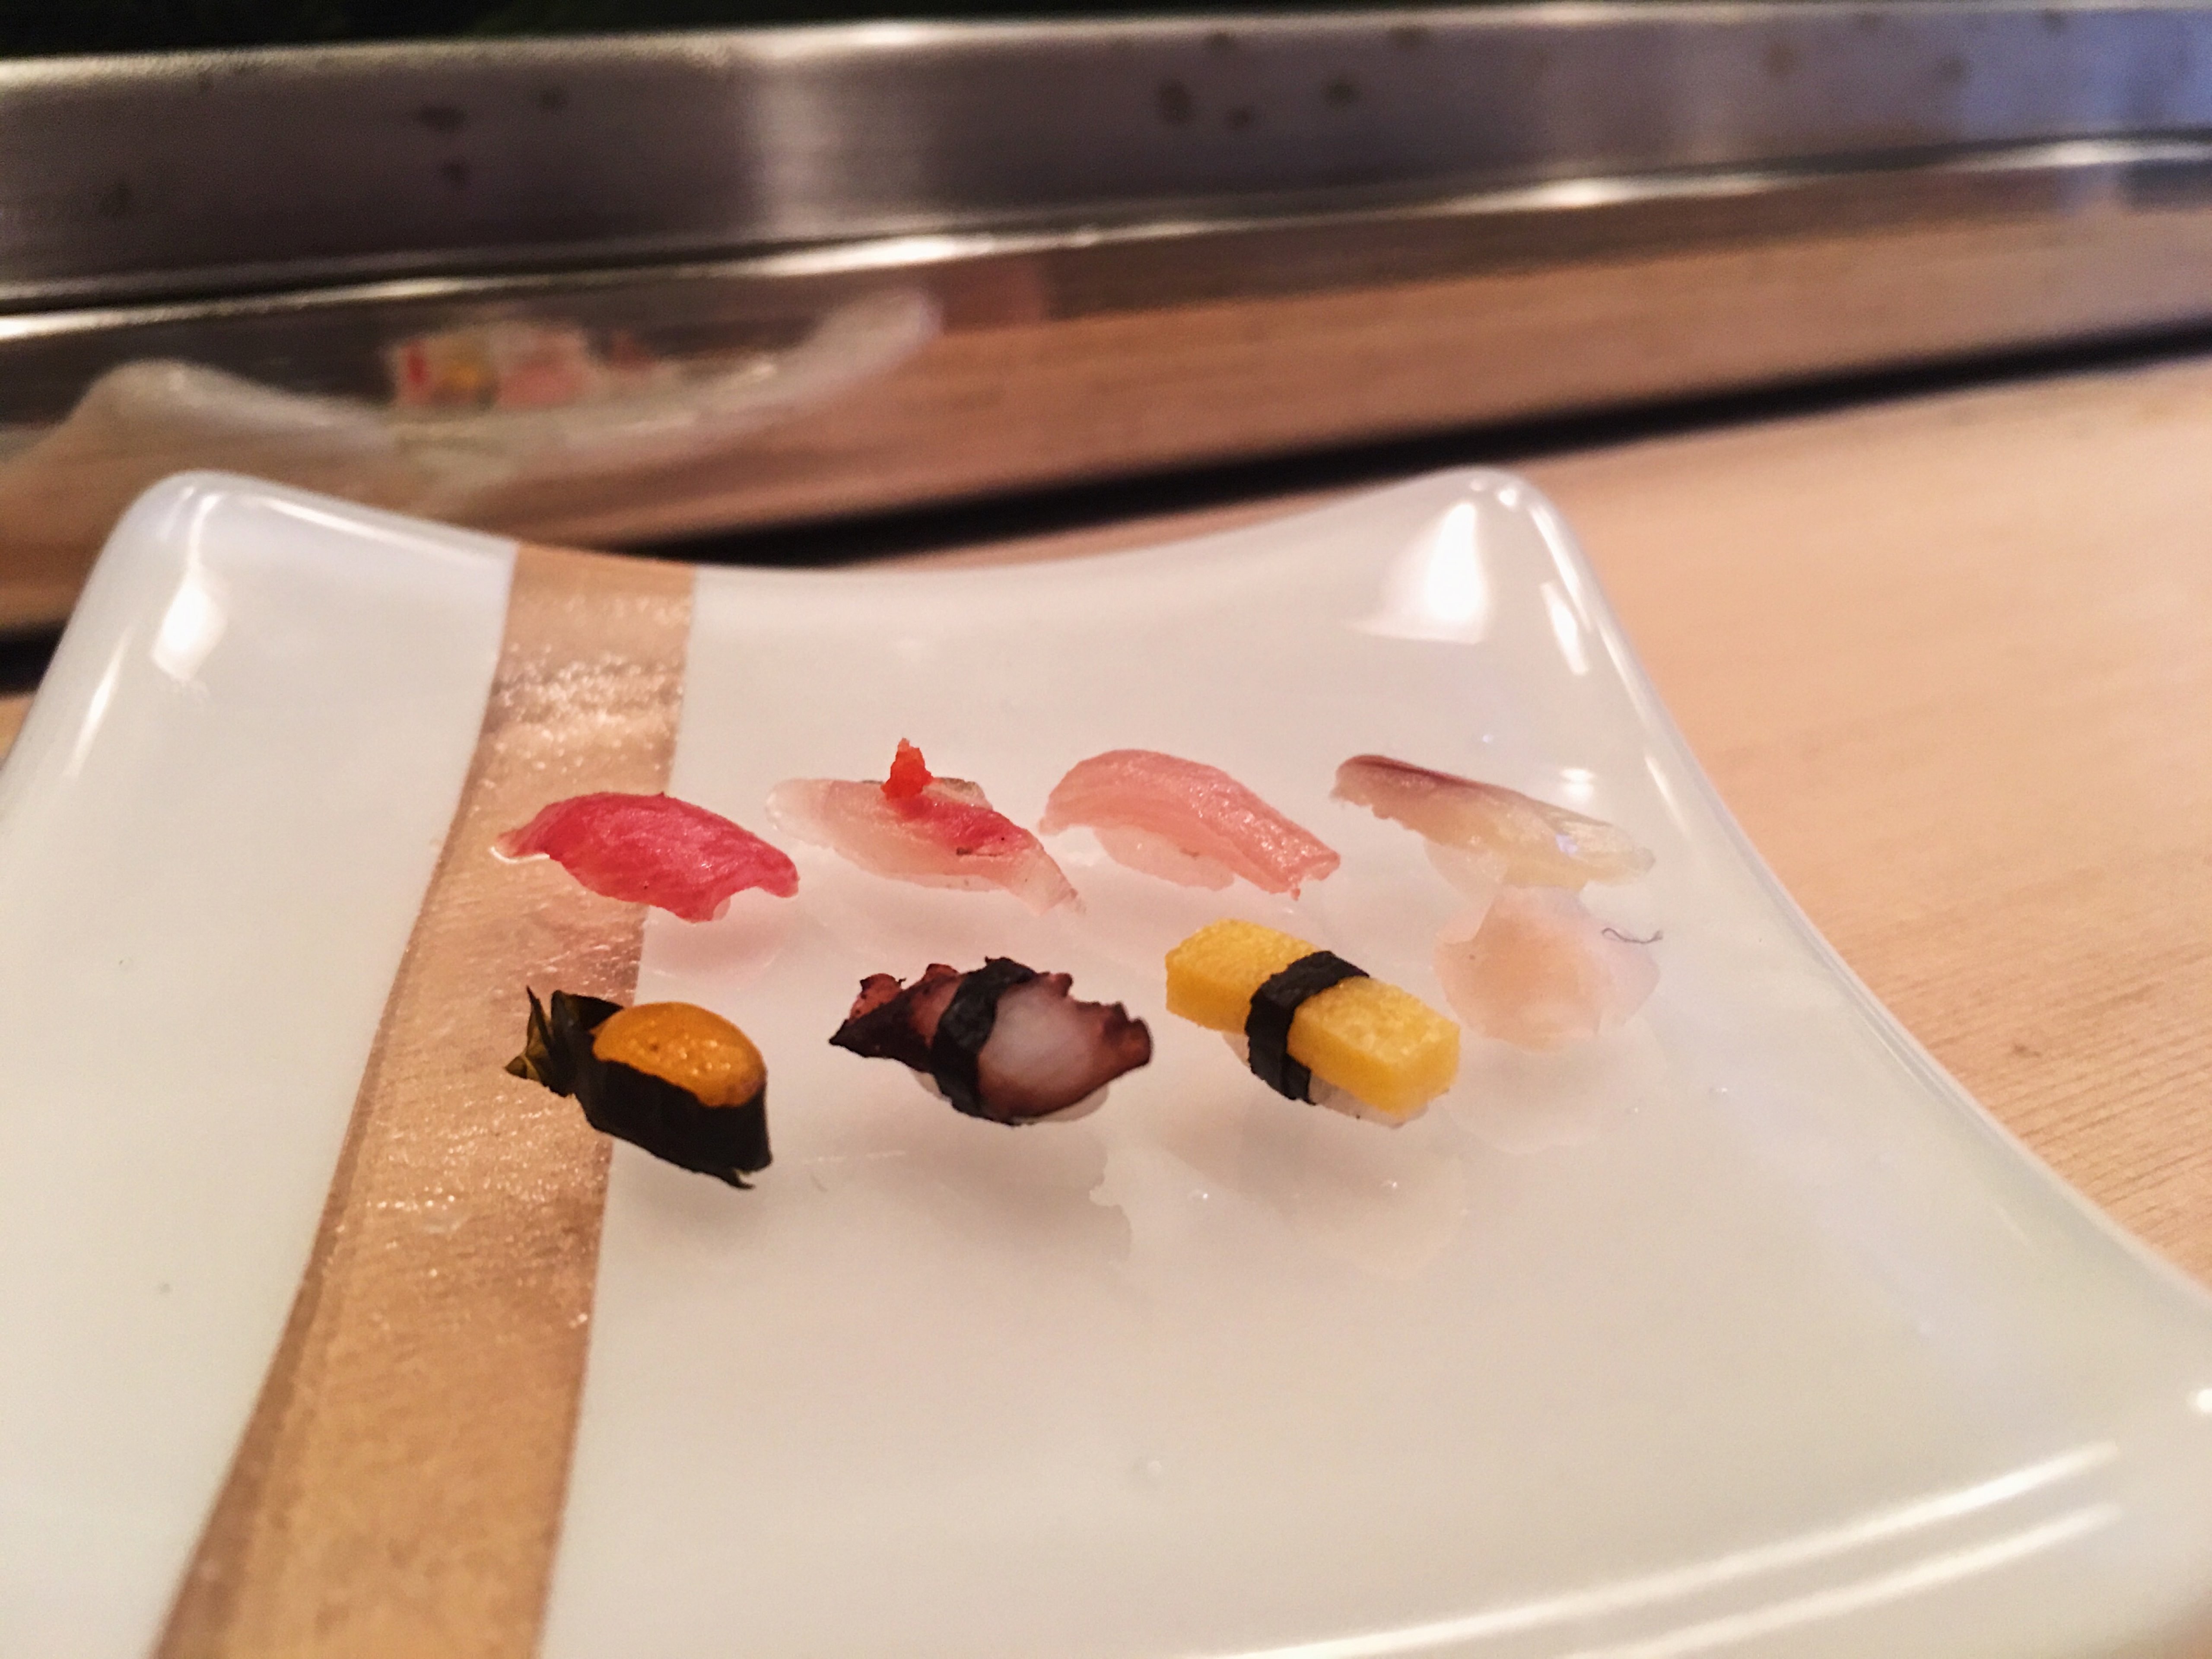 aya Sushi Making Kit, Sushi Maker 2, Online Video Tutorials